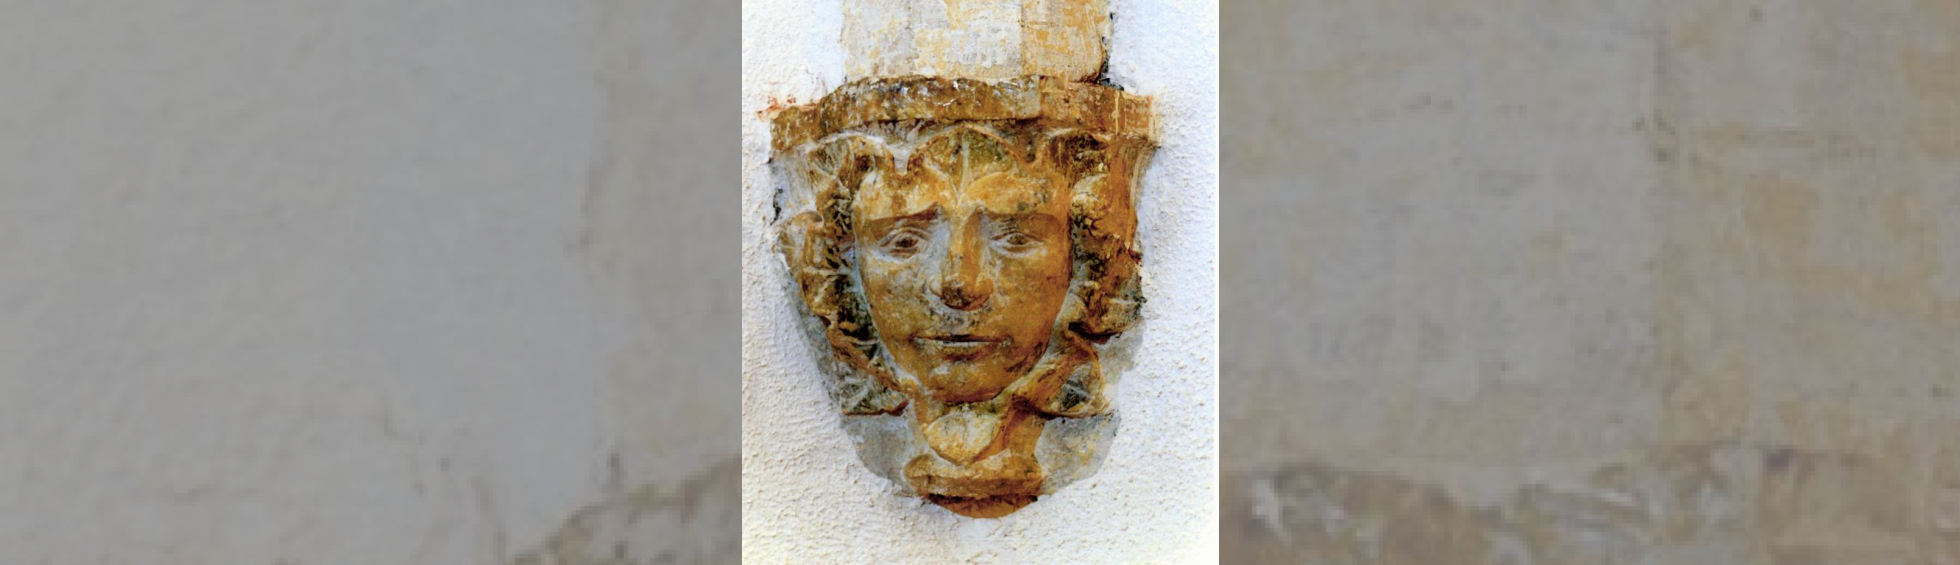 Détail de console sculptée : un visage encadré par une couronne de feuillage